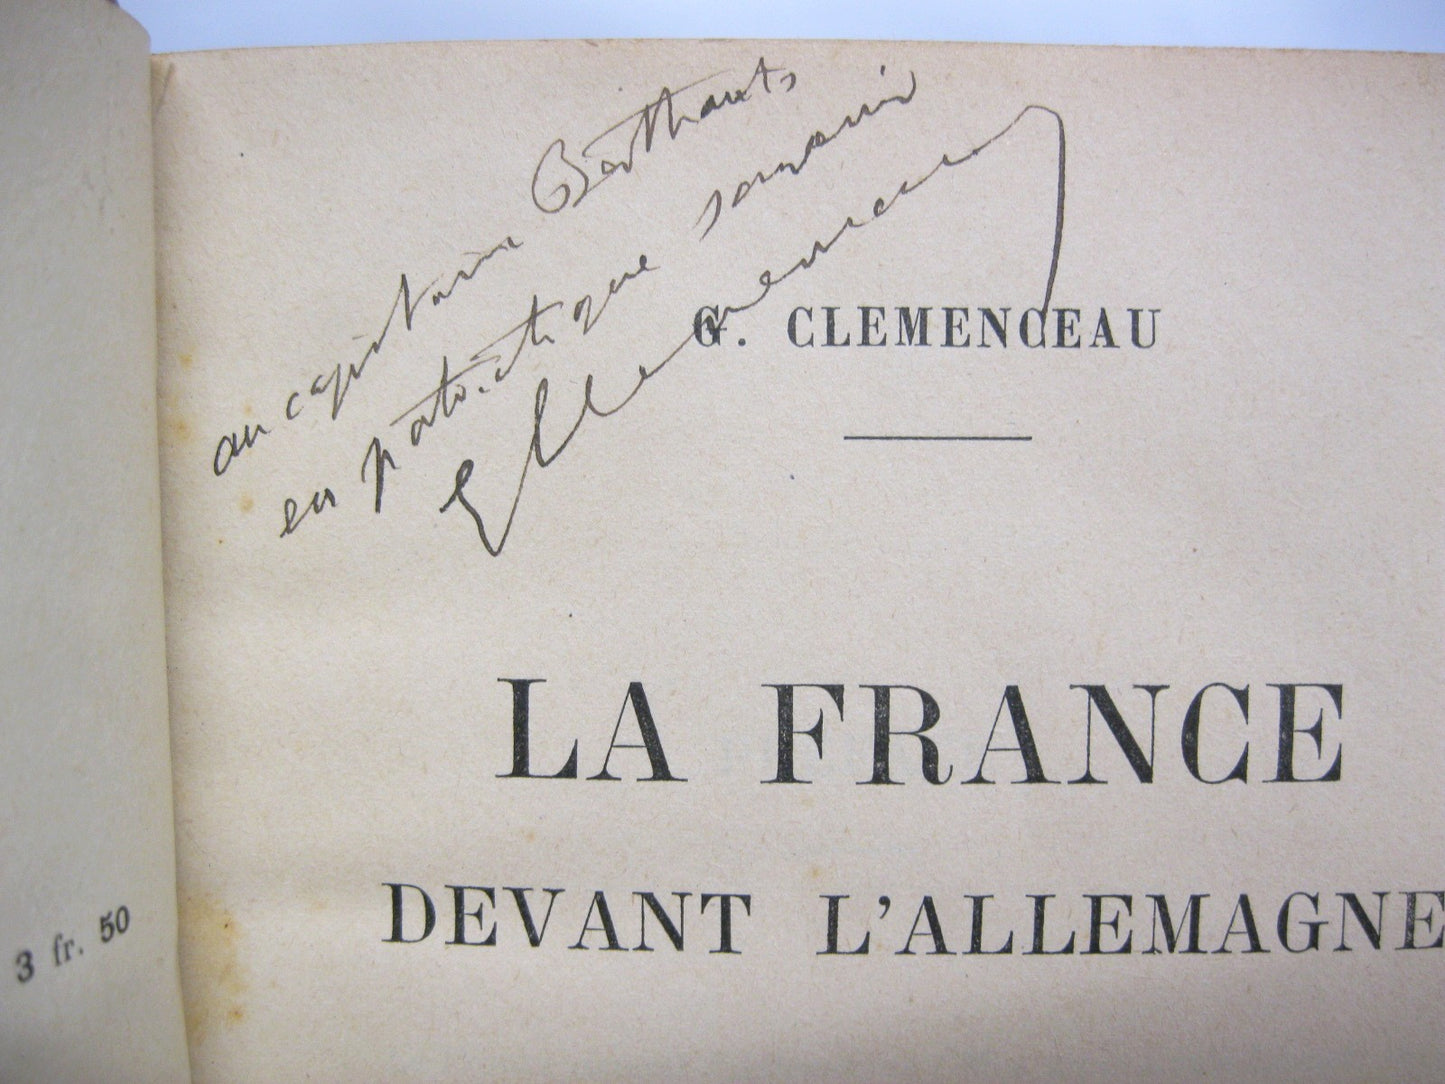 La France Devant l'Allemagne by Georges Clemenceau